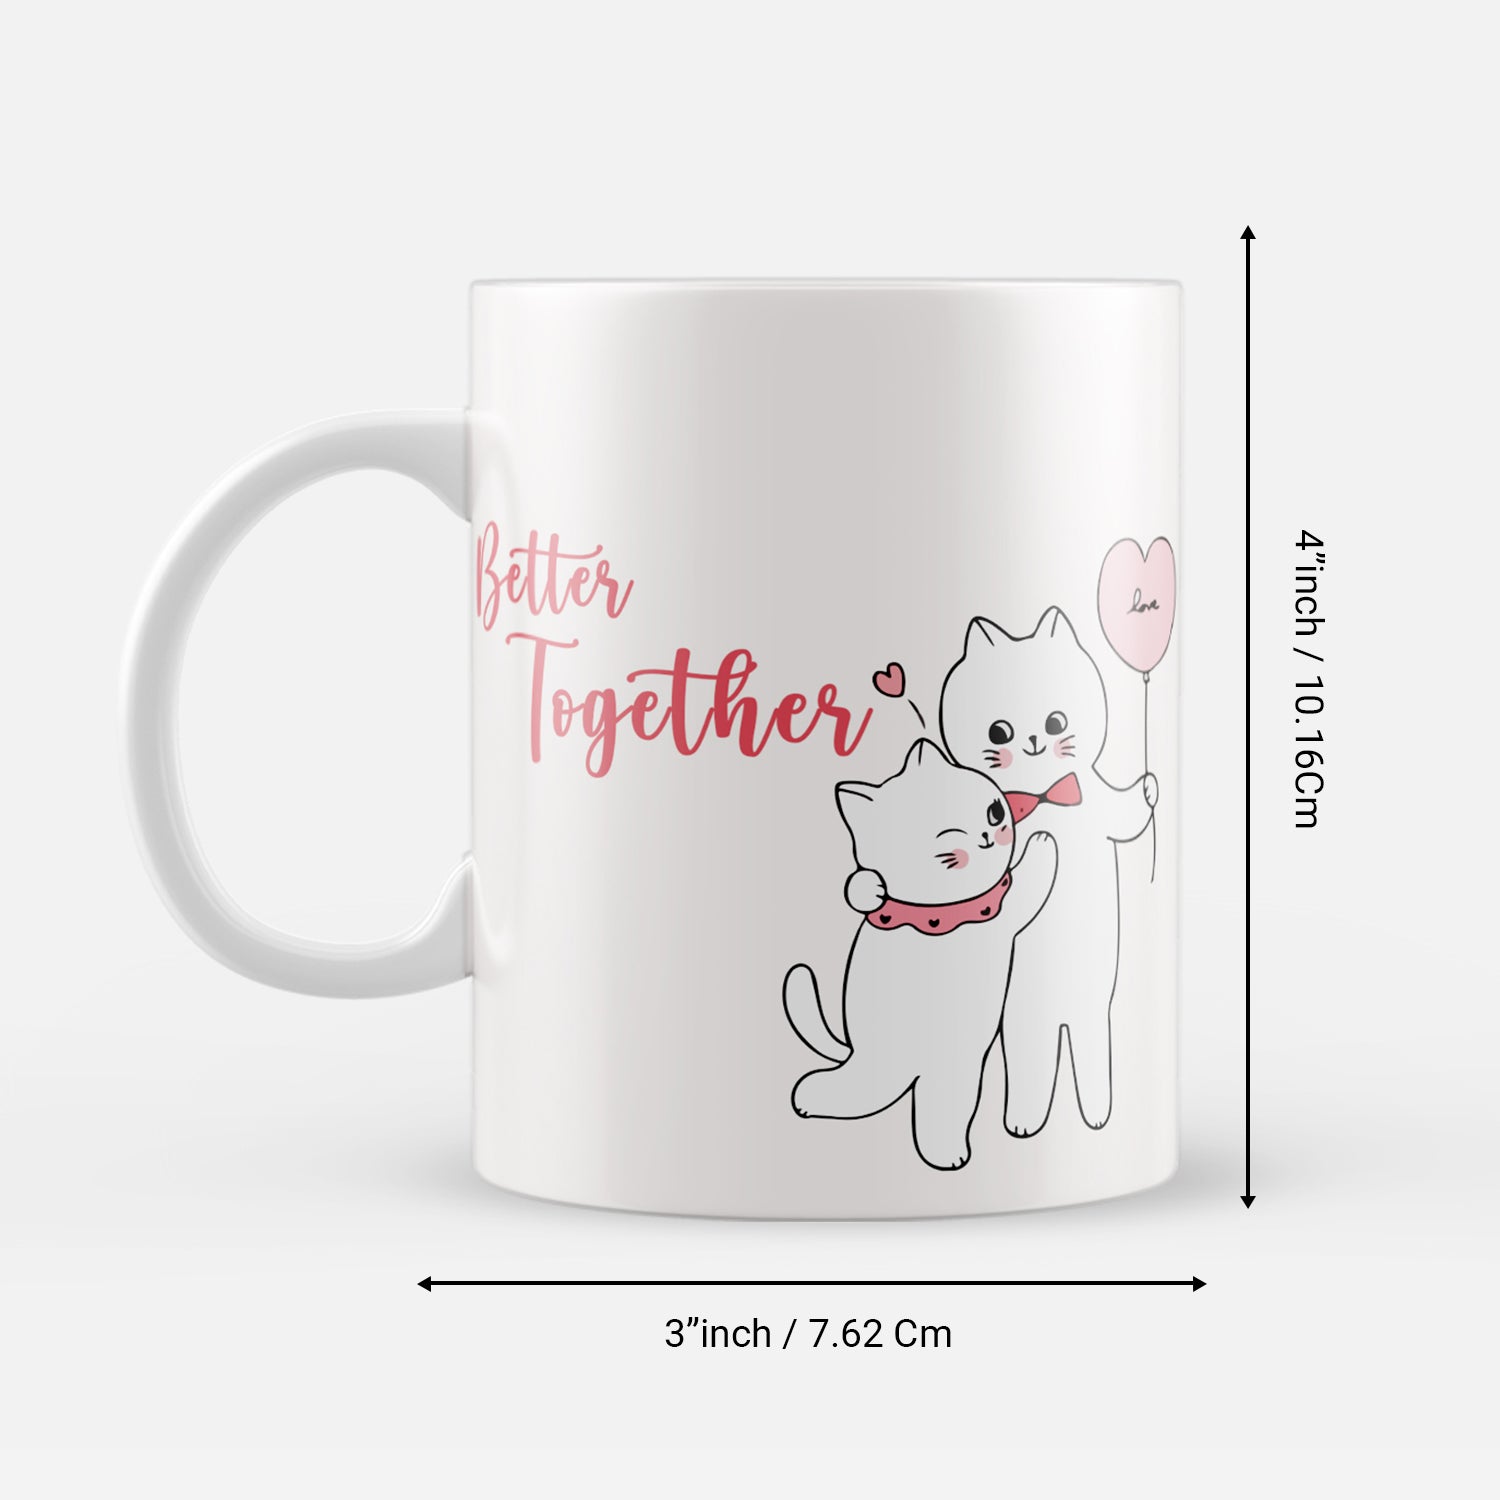 "Better Together" Valentine Love theme Ceramic Coffee Mug 3